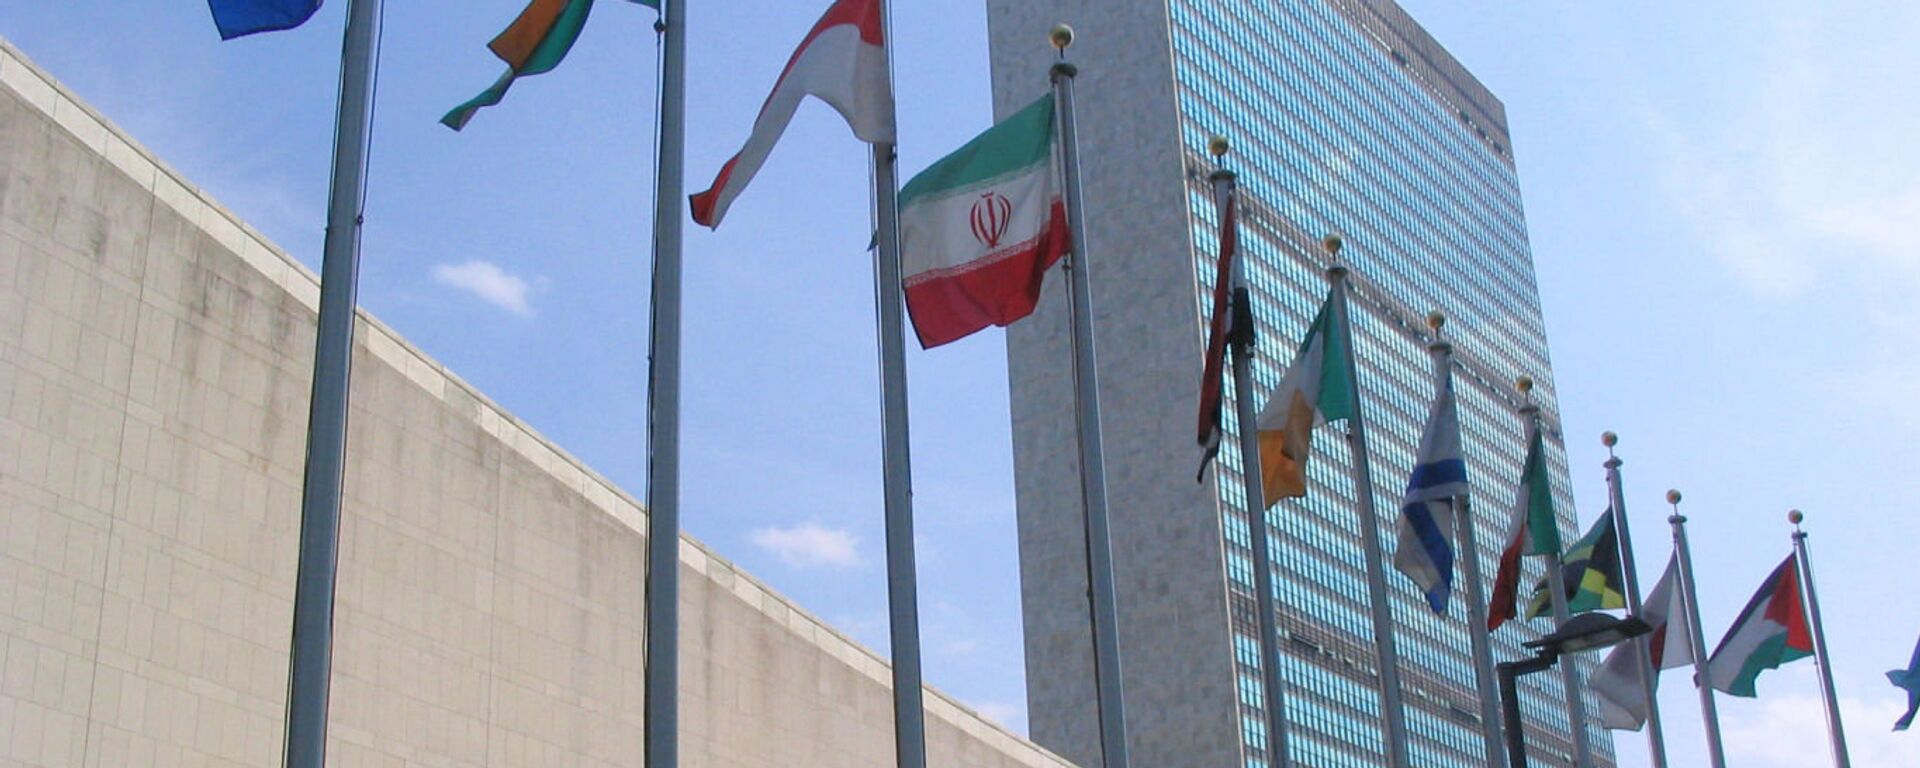 Le siège des Nations unies à New York - Sputnik Afrique, 1920, 23.07.2020